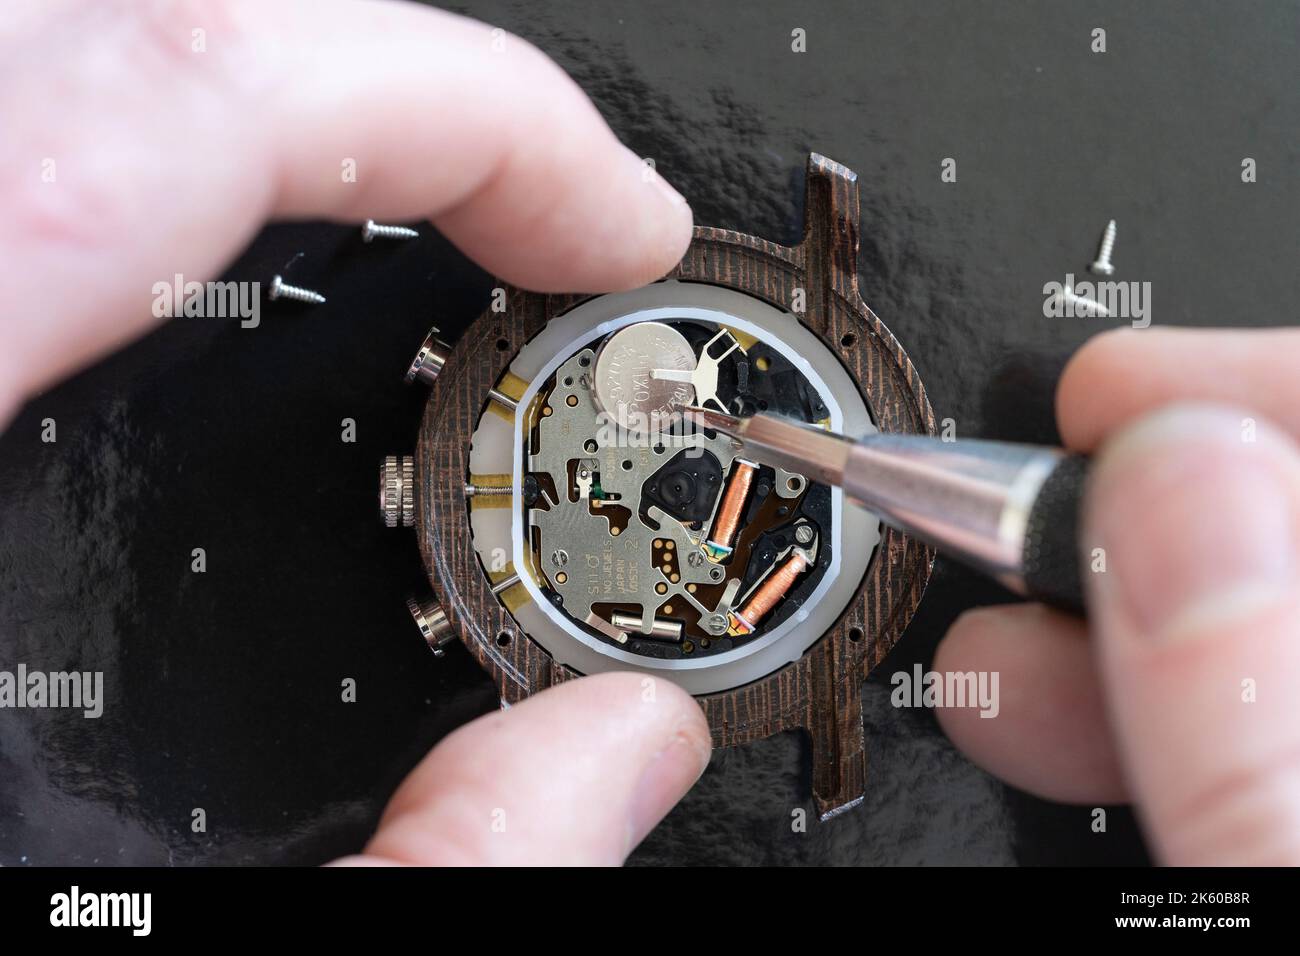 Makro-Nahaufnahme eines Mannes, der einen Mini-Schraubendreher verwendet, um eine Batterie für eine Armbanduhr zu Hause zu ersetzen, wobei das Innenleben der Uhr freigelegt ist. England Stockfoto